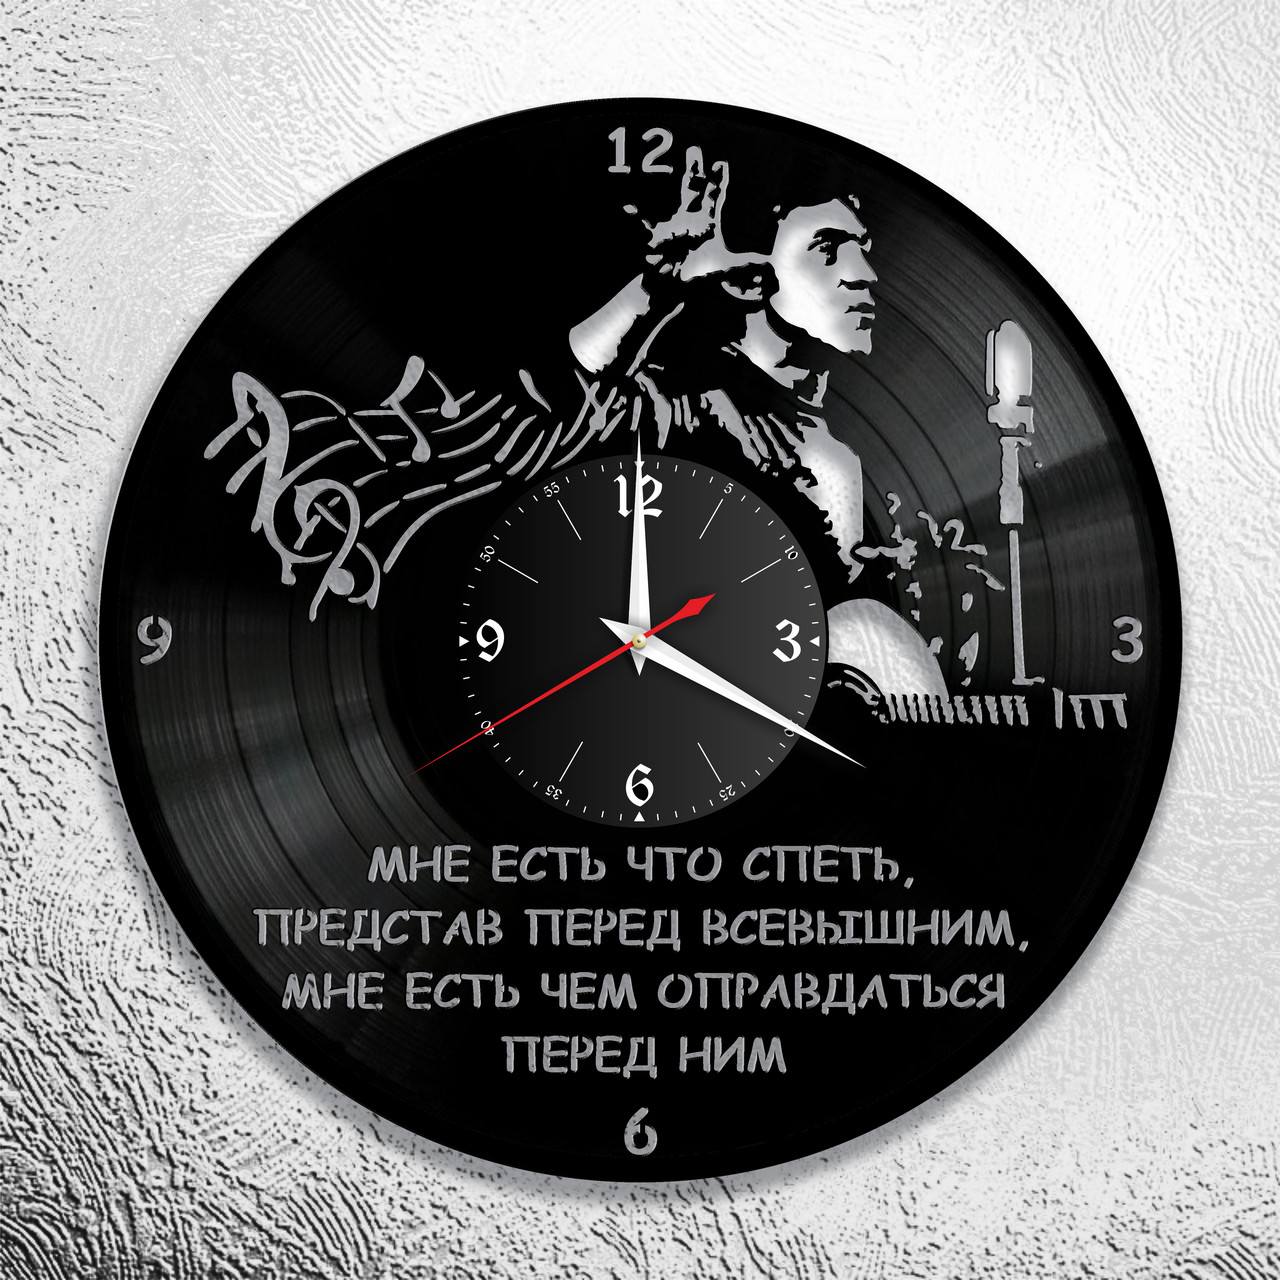 Оригинальные часы из виниловых пластинок "Высоцкий" версия 7, фото 1